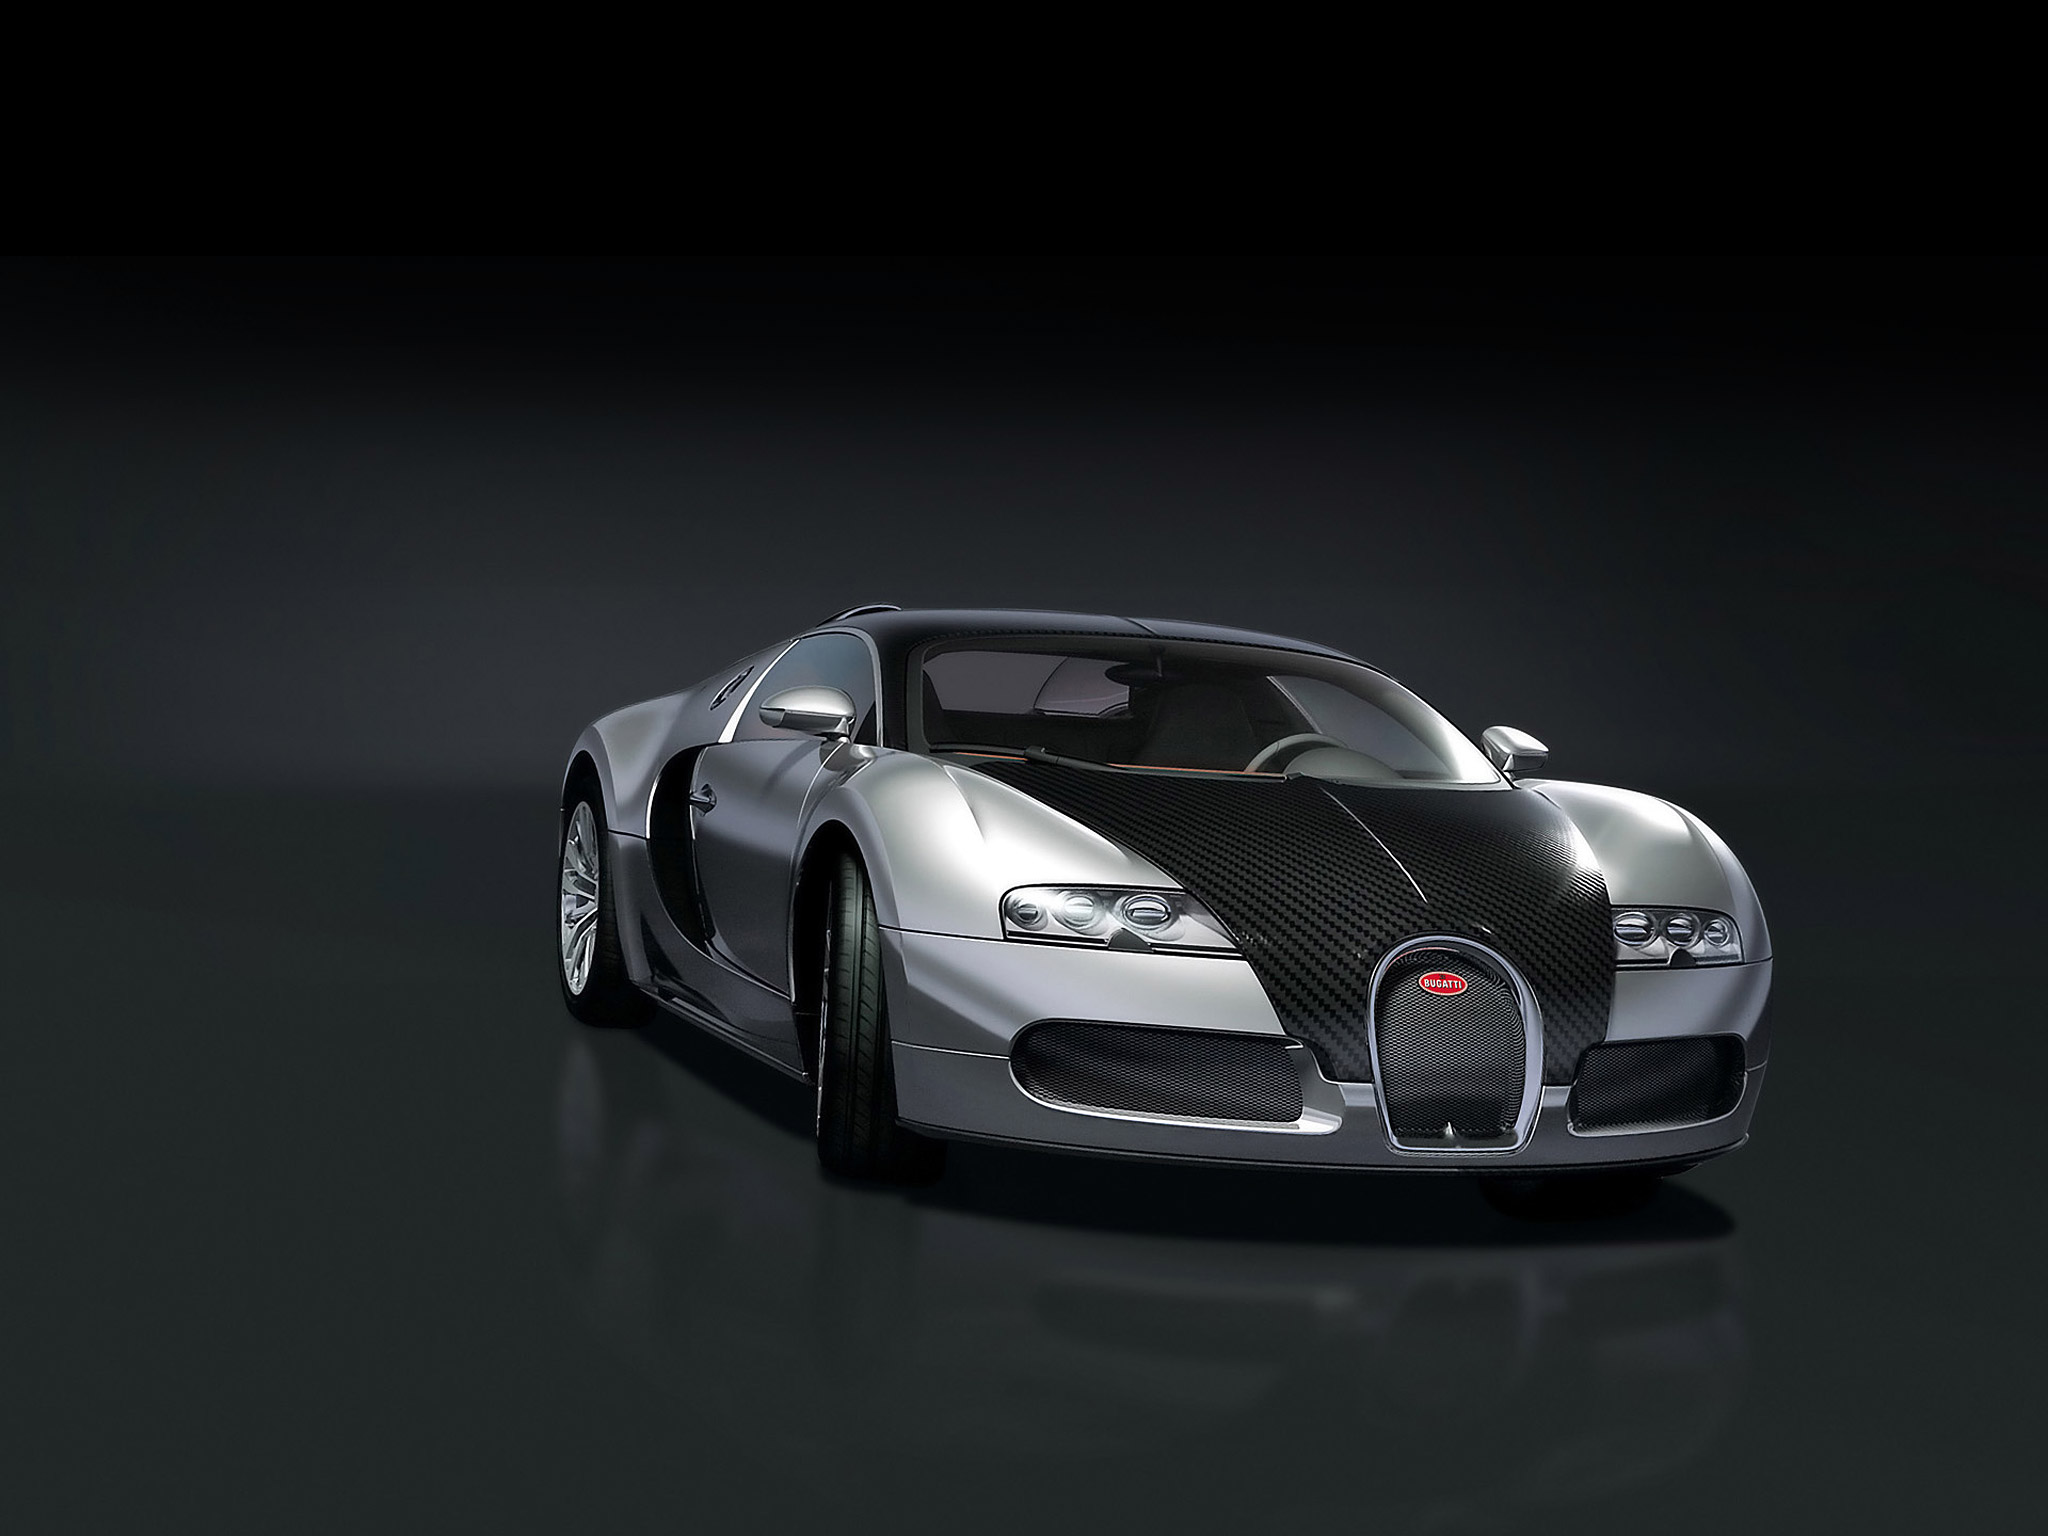 Скачать обои Bugatti Veyron 16 4 Пур Санг на телефон бесплатно